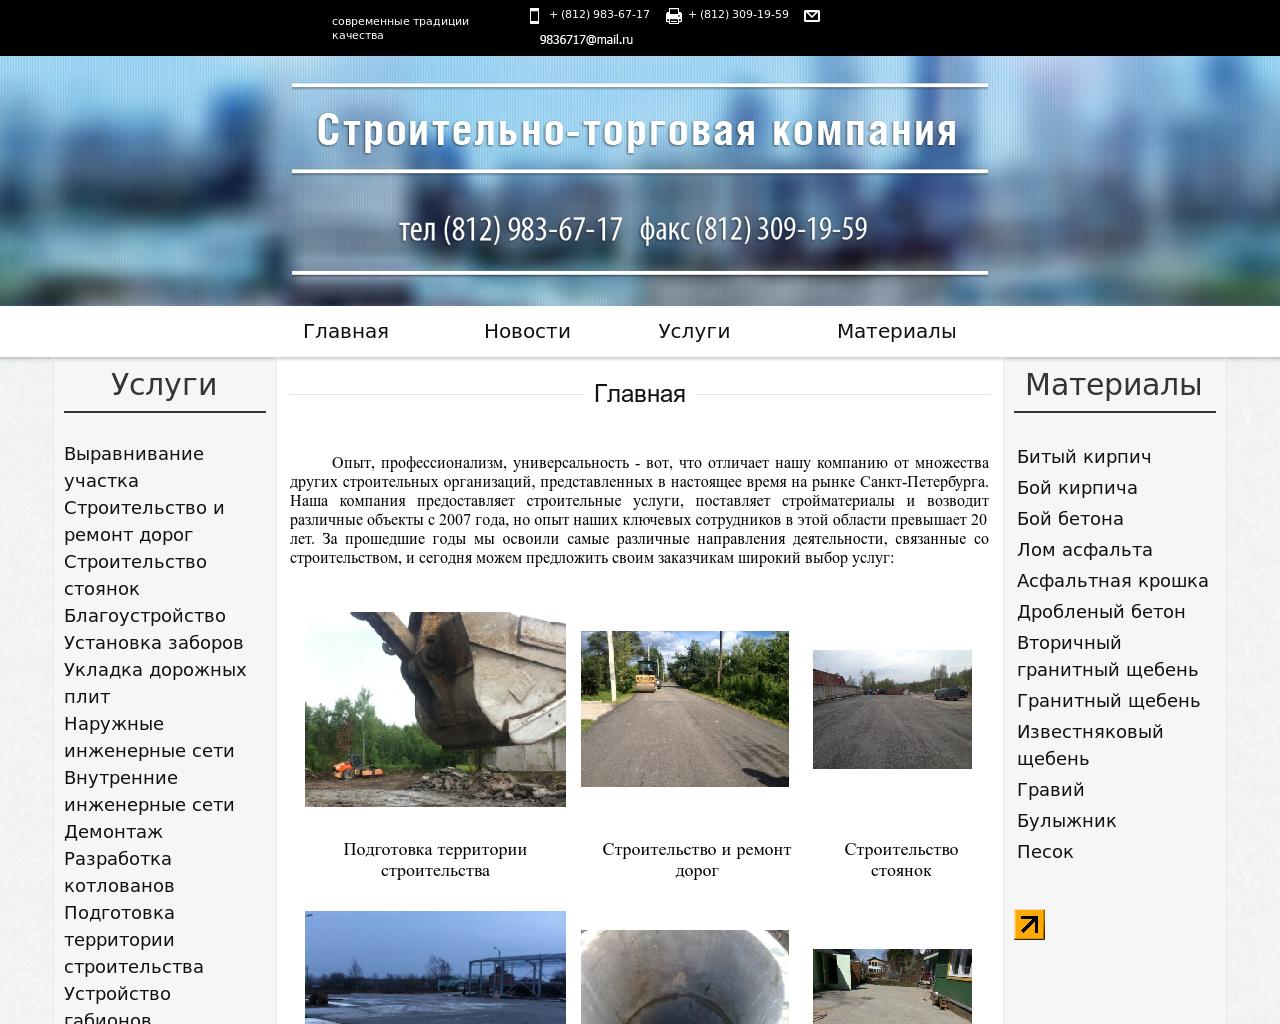 Изображение сайта 9836717.ru в разрешении 1280x1024